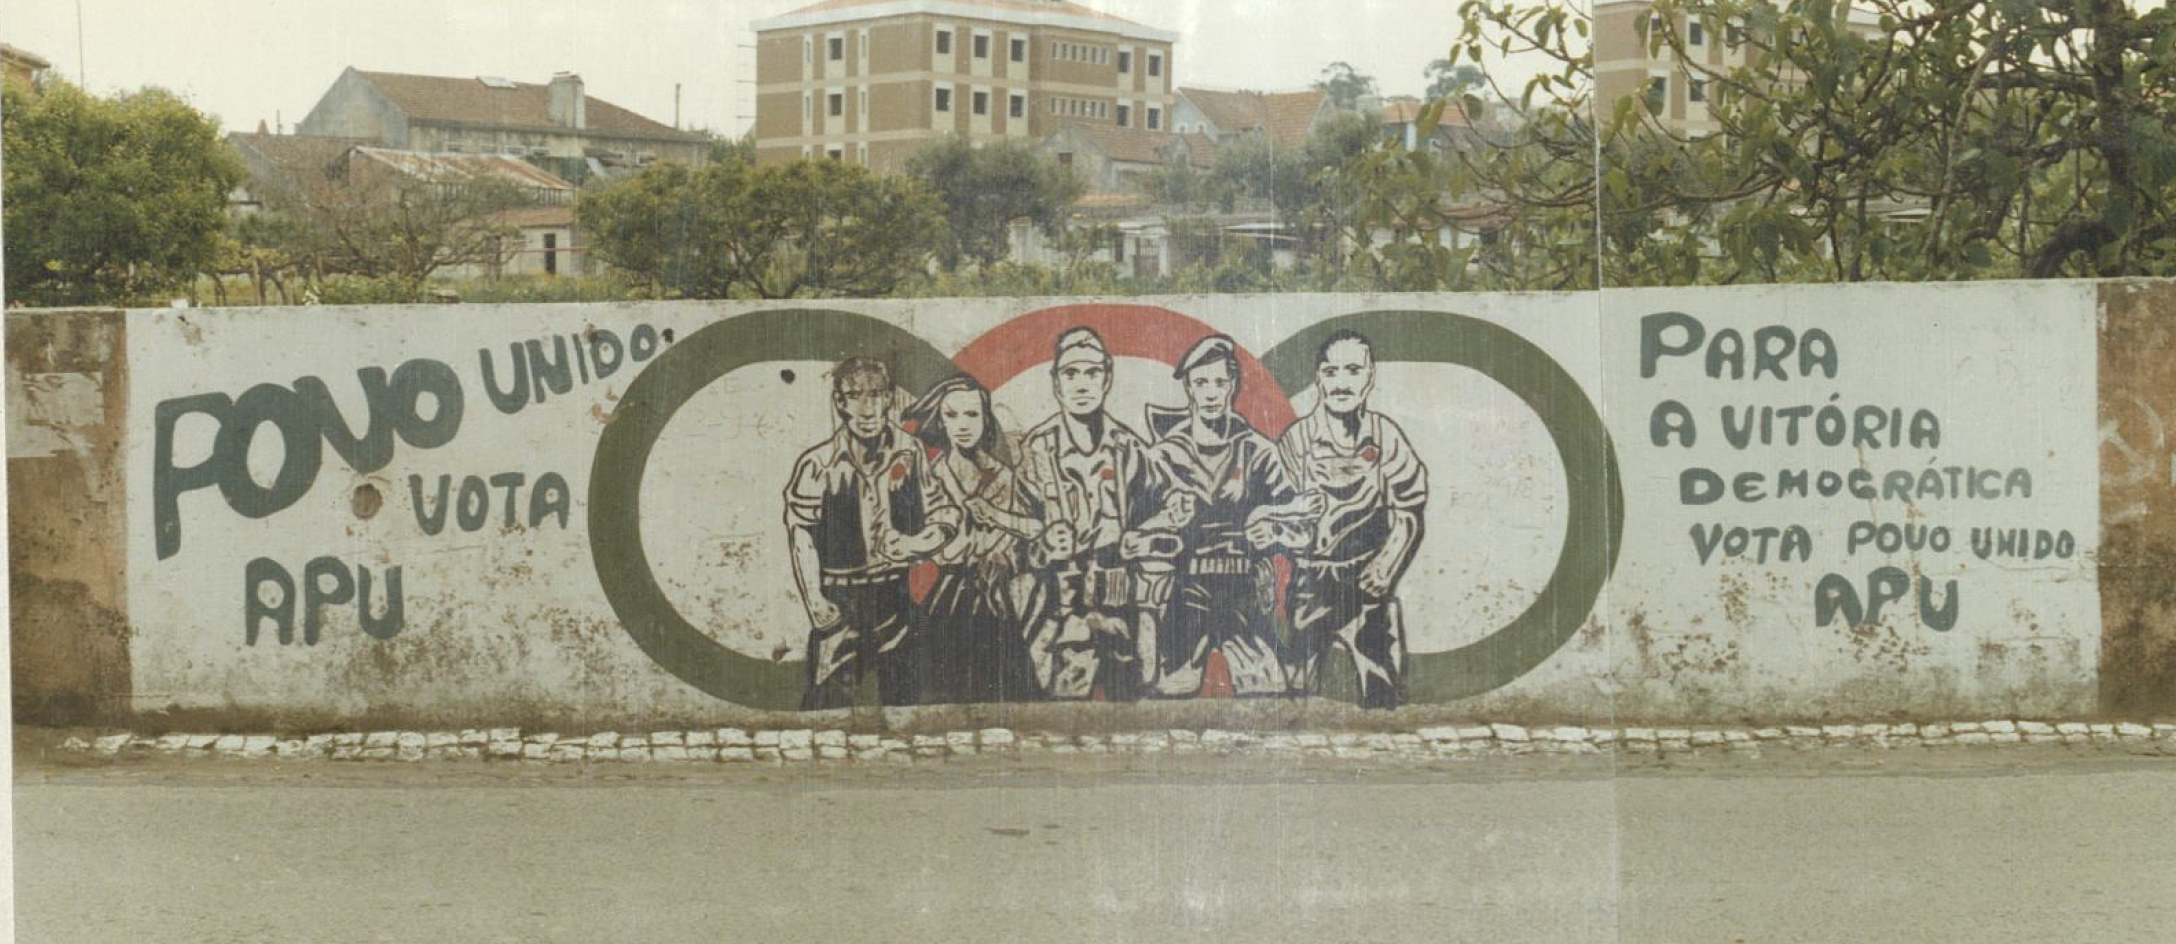 Mural vota Aliança Povo Unido (APU) em Queluz